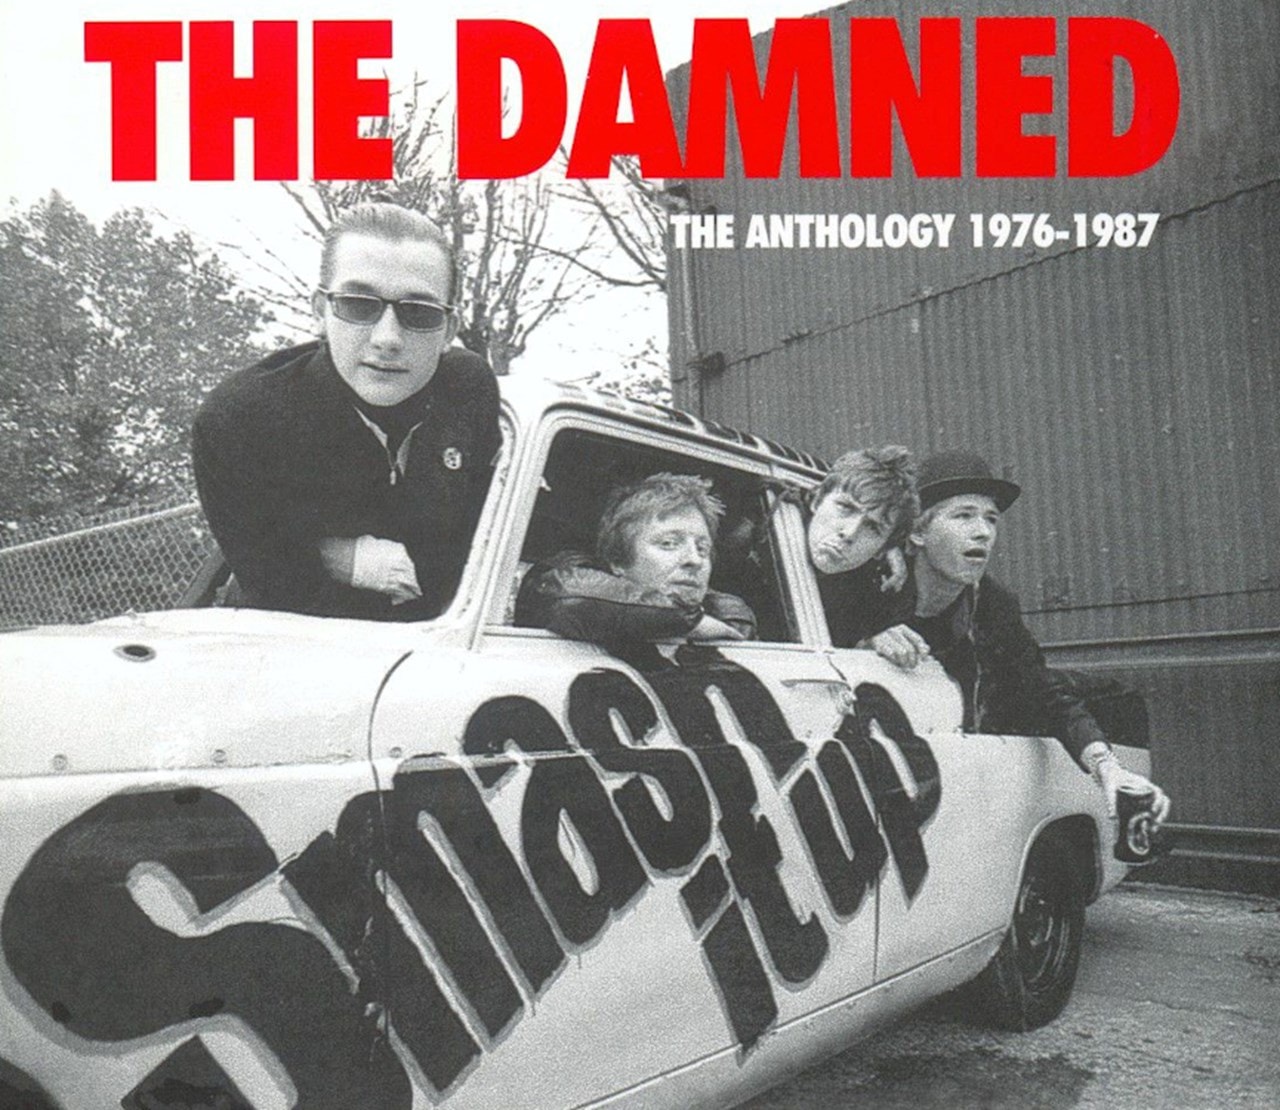  Smash  It Up The Anthology 1976 1987 CD Album  Free 